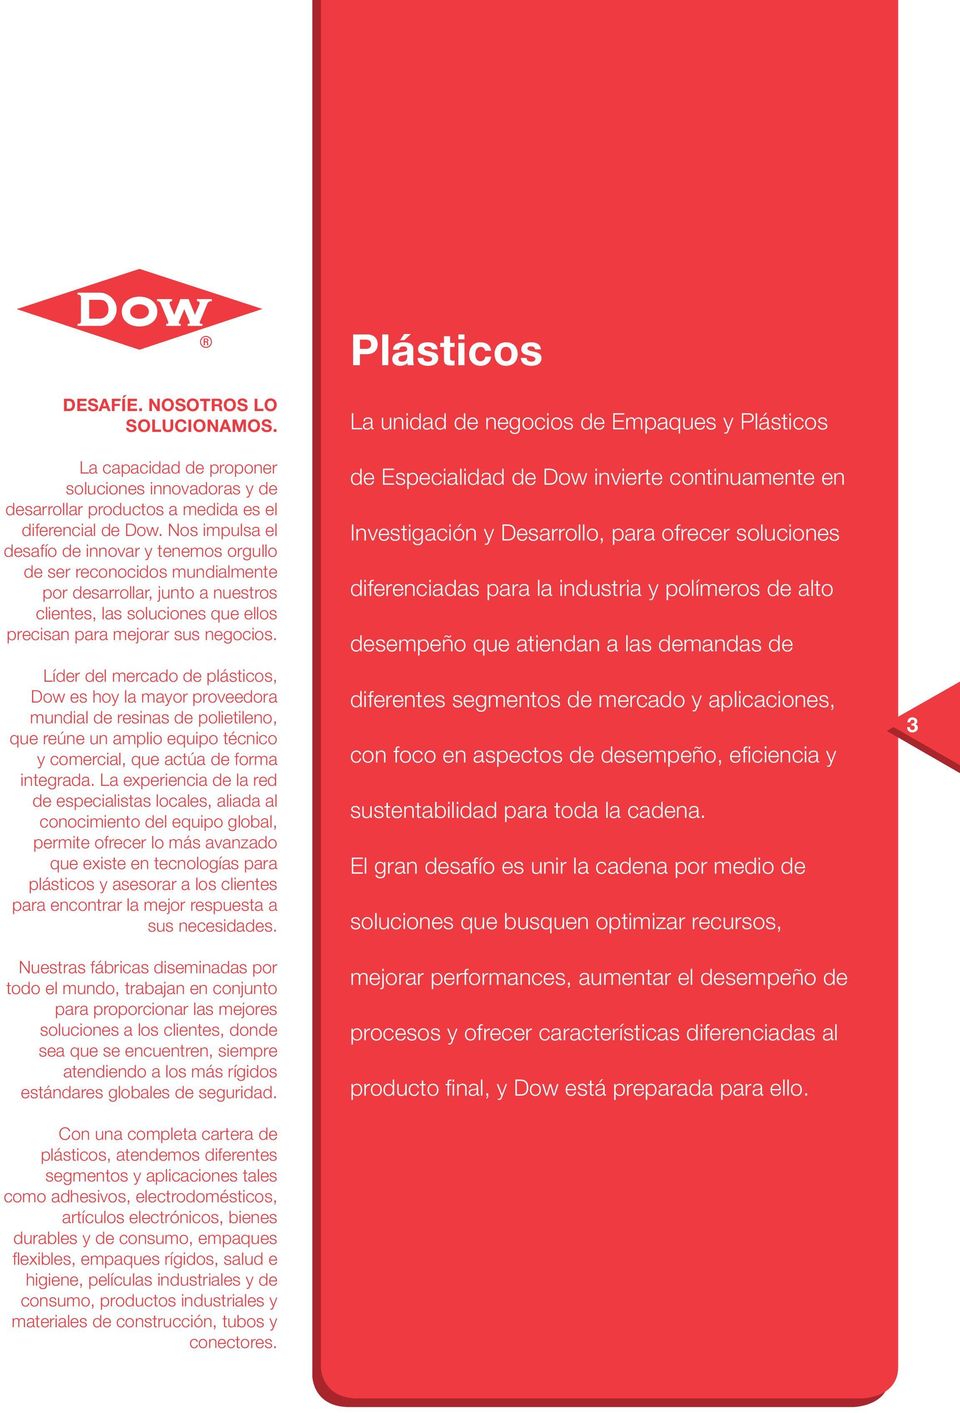 Líder del mercado de plásticos, Dow es hoy la mayor proveedora mundial de resinas de polietileno, que reúne un amplio equipo técnico y comercial, que actúa de forma integrada.